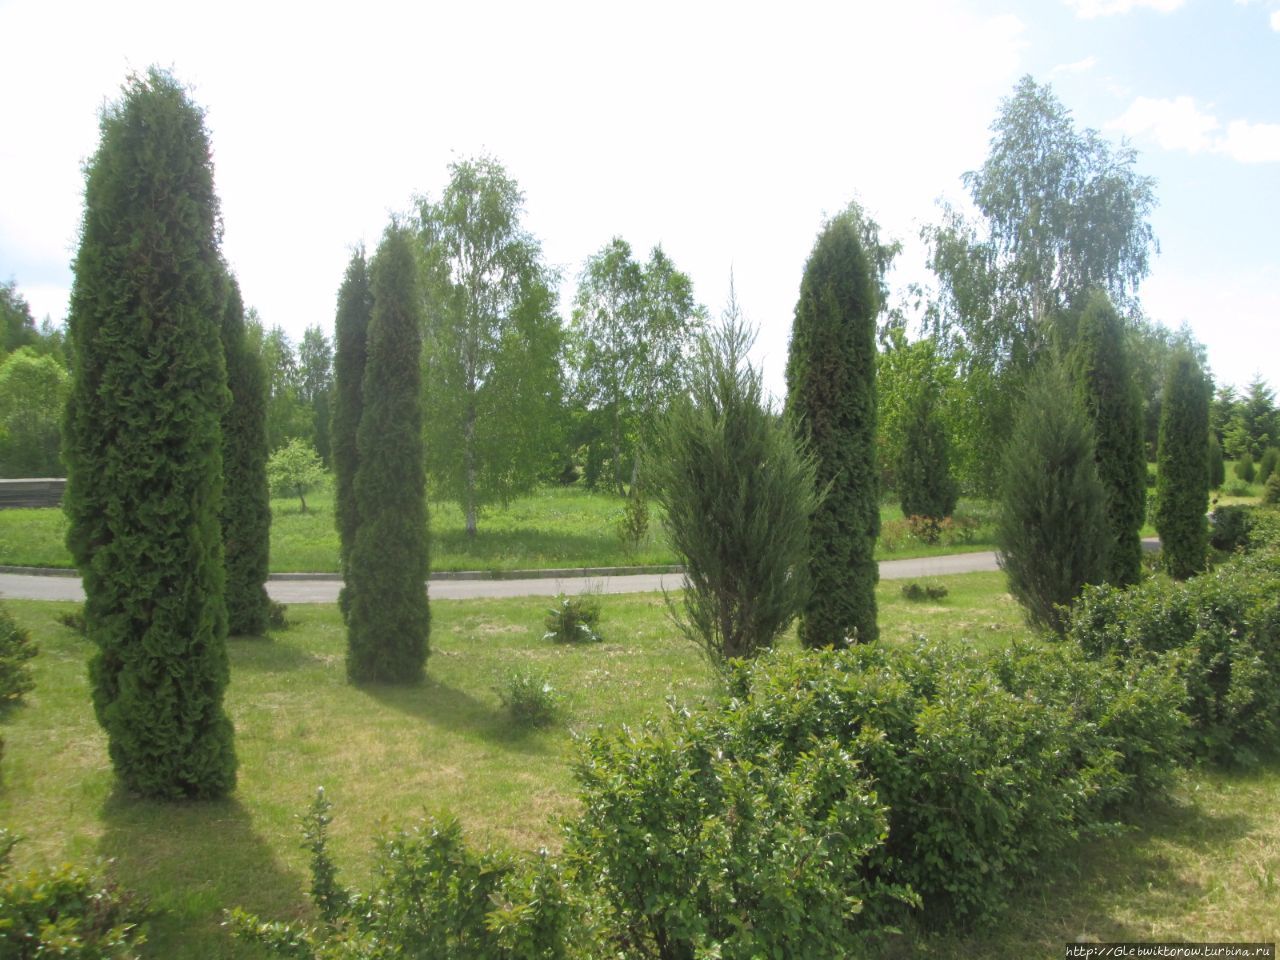 Прогулка в Дендрологический сад Нарочанского парка Мядель, Беларусь